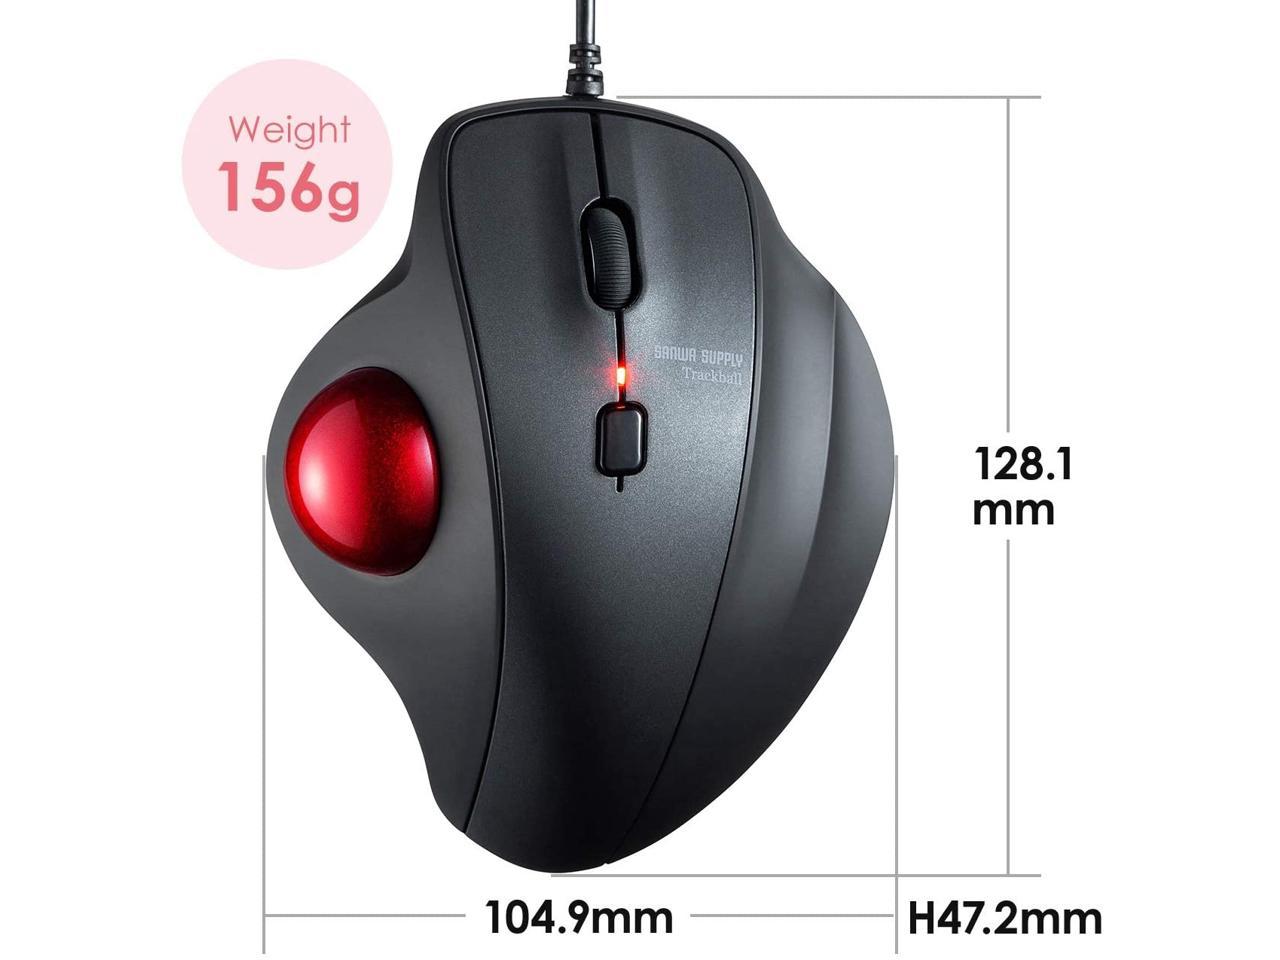 SANWA (Japan Brand) Wired Ergonomic Trackball Mouse Silent Noiseless